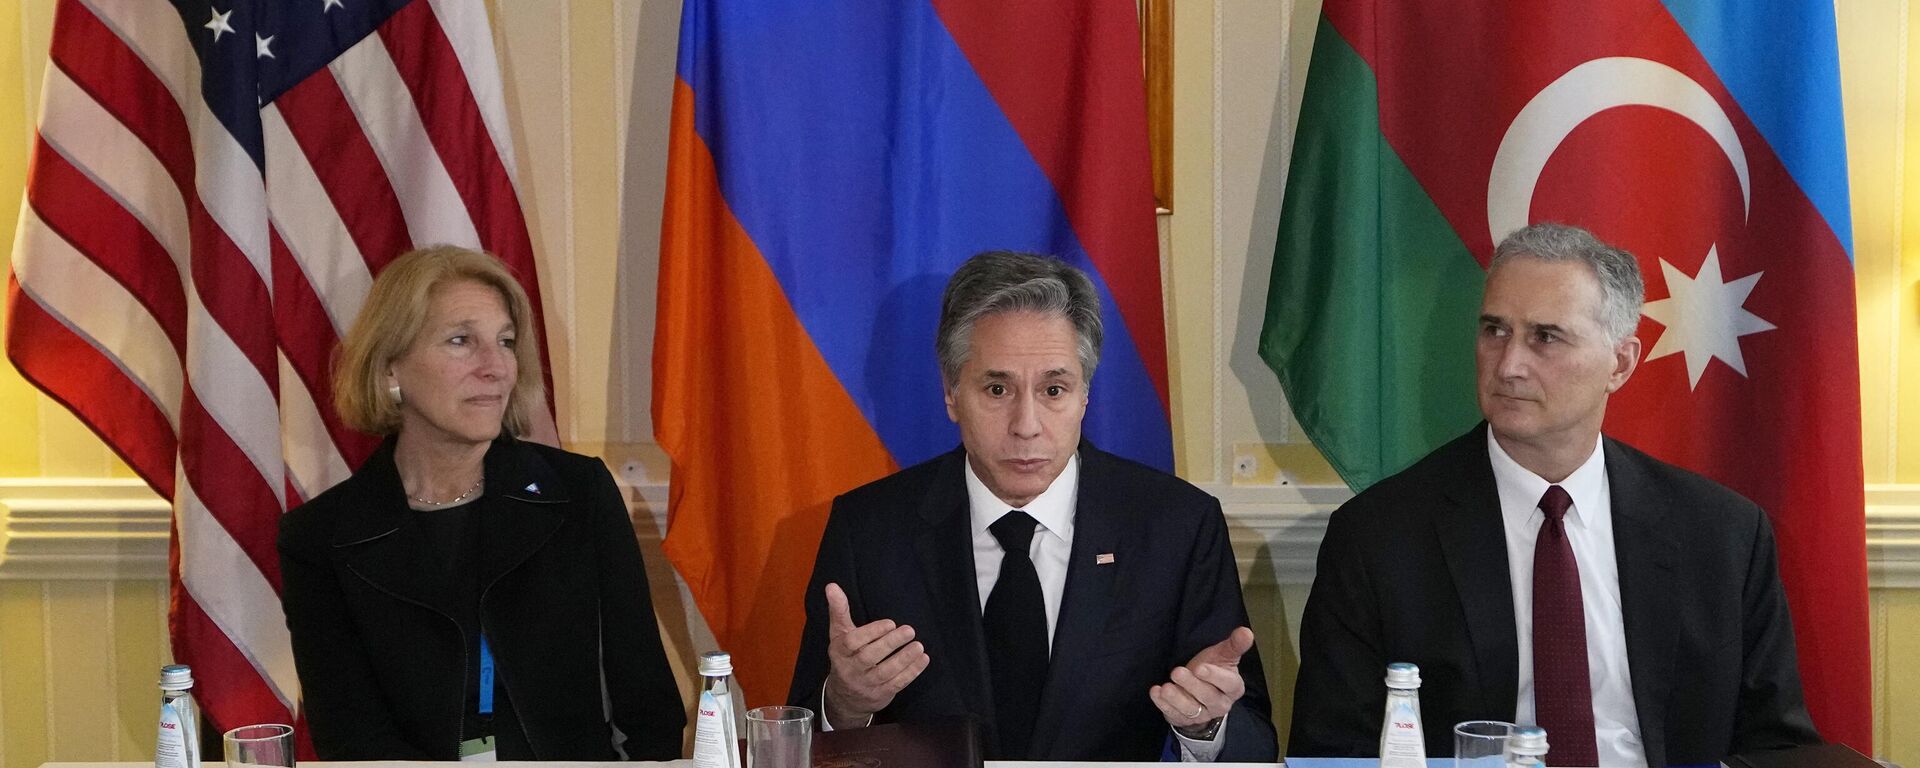 El Secretario de Estado de EEUU, Antony Blinken, asiste a una reunión con el presidente de Azerbaiyán y el primer ministro de Armenia (ambos sin ser vistos) en la Conferencia de Seguridad de Múnich - Sputnik Mundo, 1920, 18.02.2023